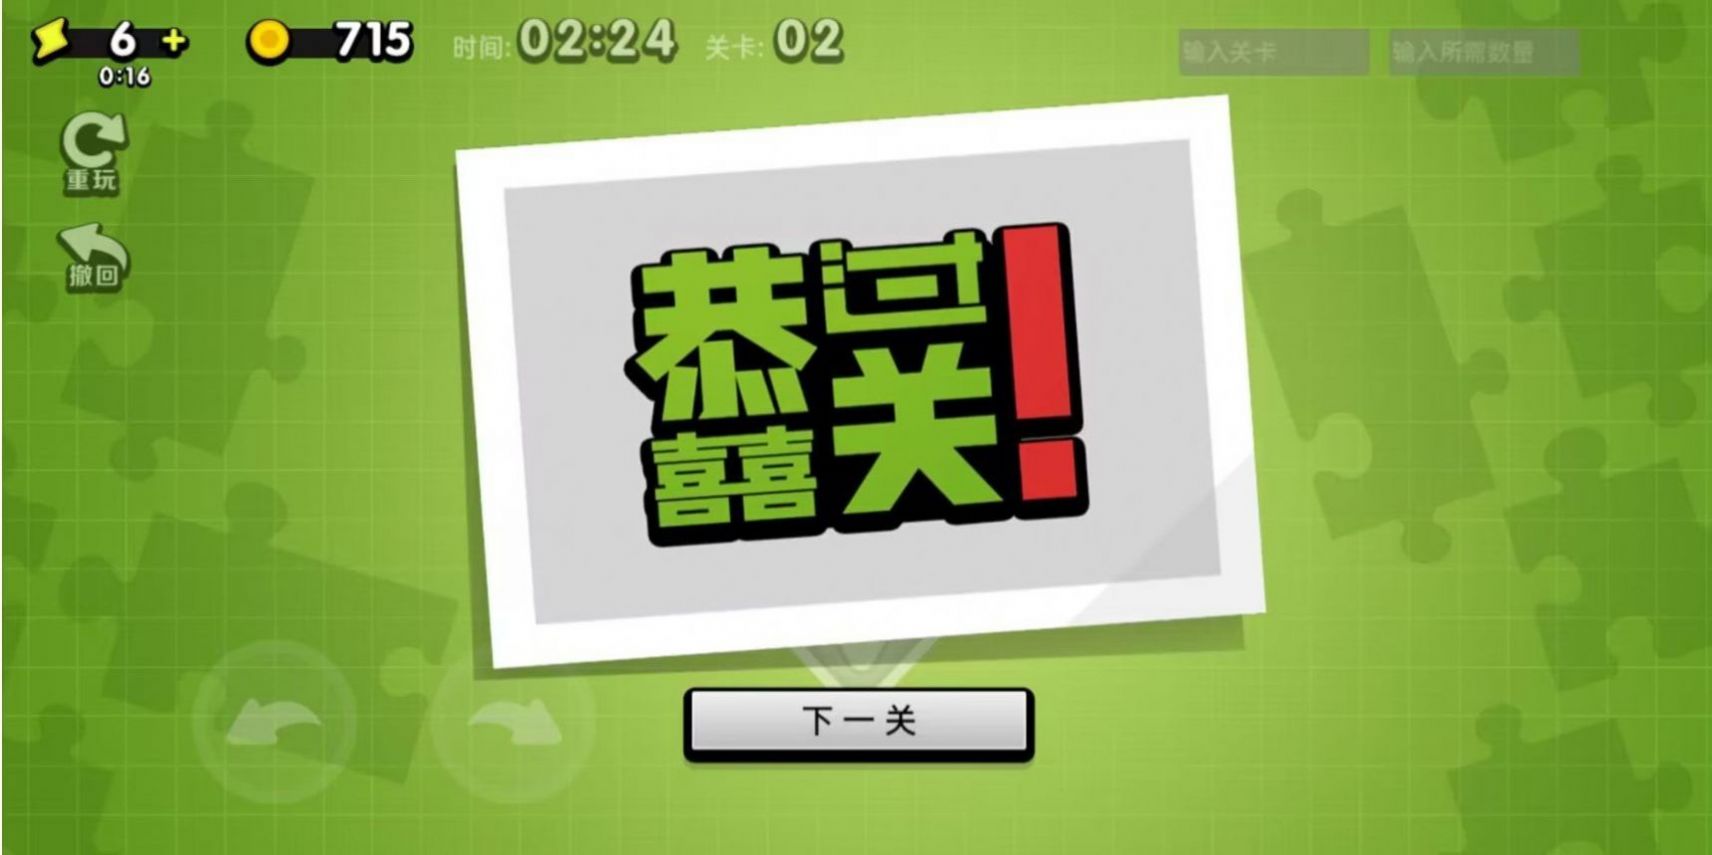 万宁方块游戏下载,万宁方块游戏官方版 v1.0